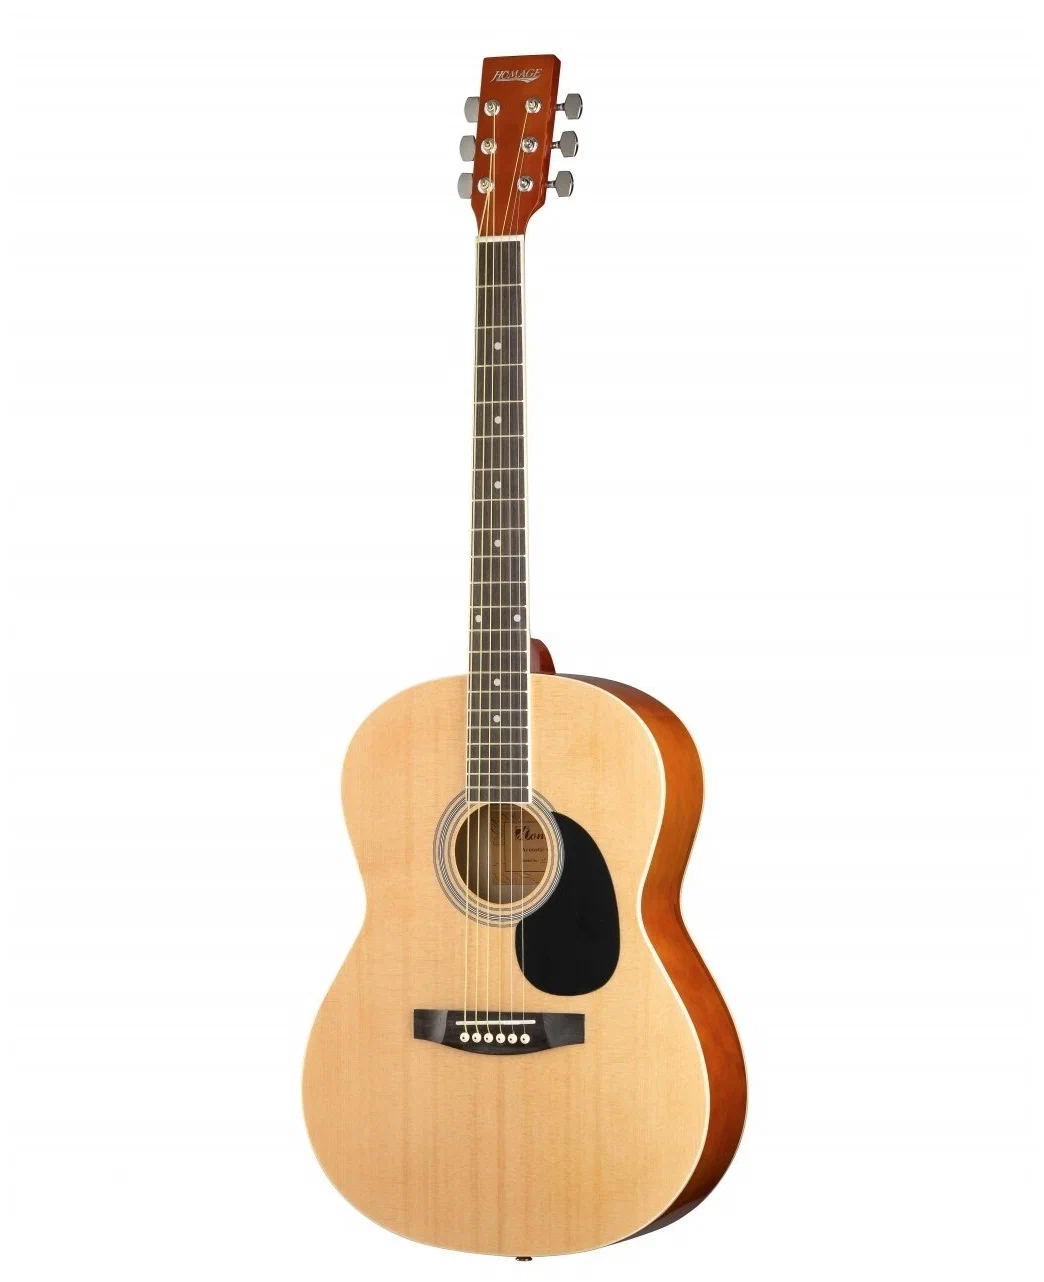 Акустические гитары Homage LF-3910 гитара деревянная soundhole sound hole обложка блок обратная связь буфер mahogany wood для eq акустические гитары фолк